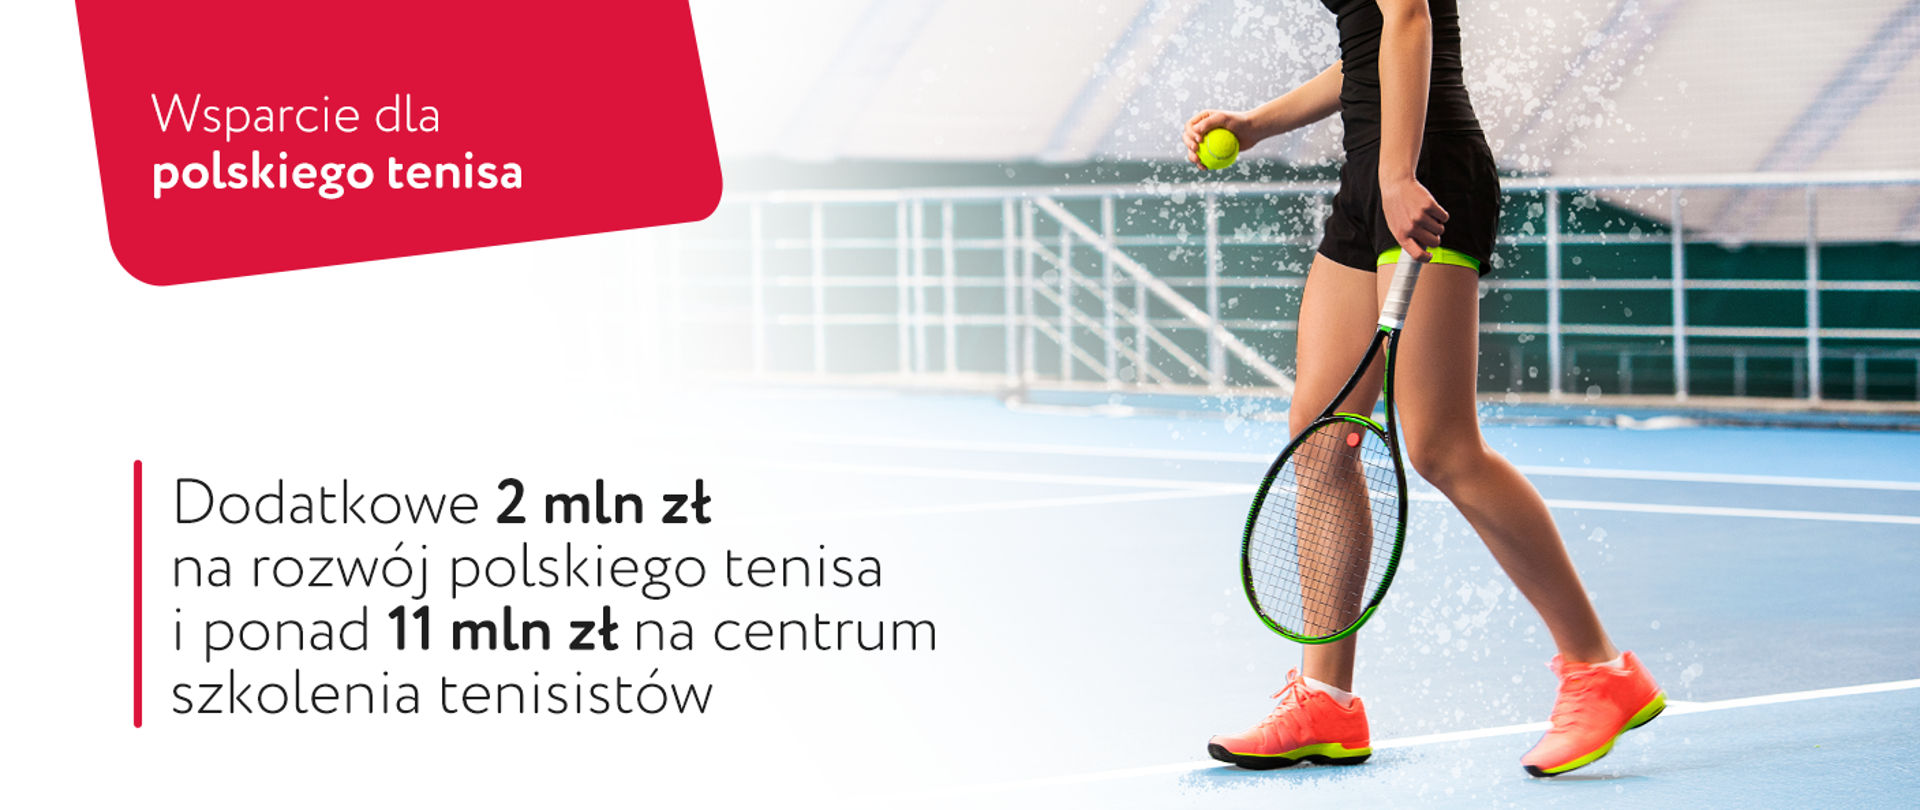 Grafika z tenisistką na korcie: "Wsparcie dla polskiego tenisa".